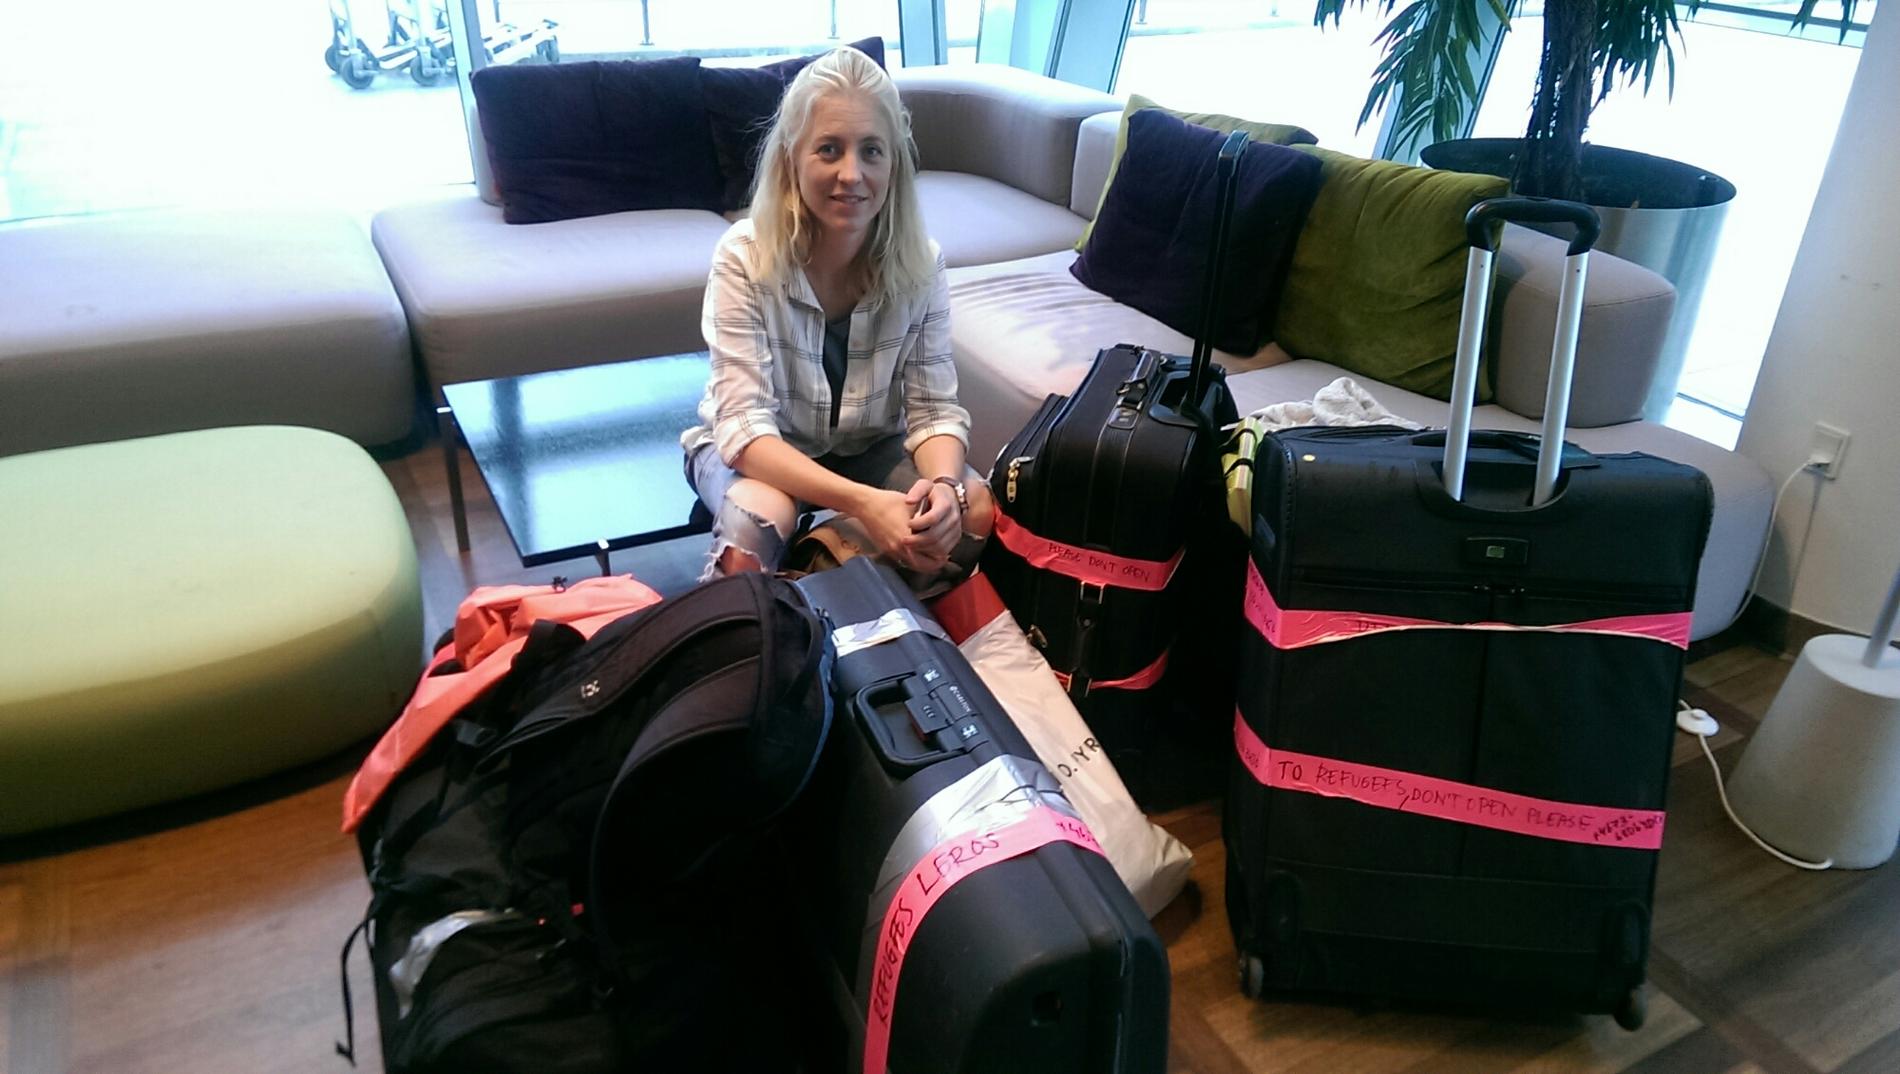 Nathalie Kroon före avfärd. Väskorna innehöll medicinsk utrustning, kläder och leksaker.